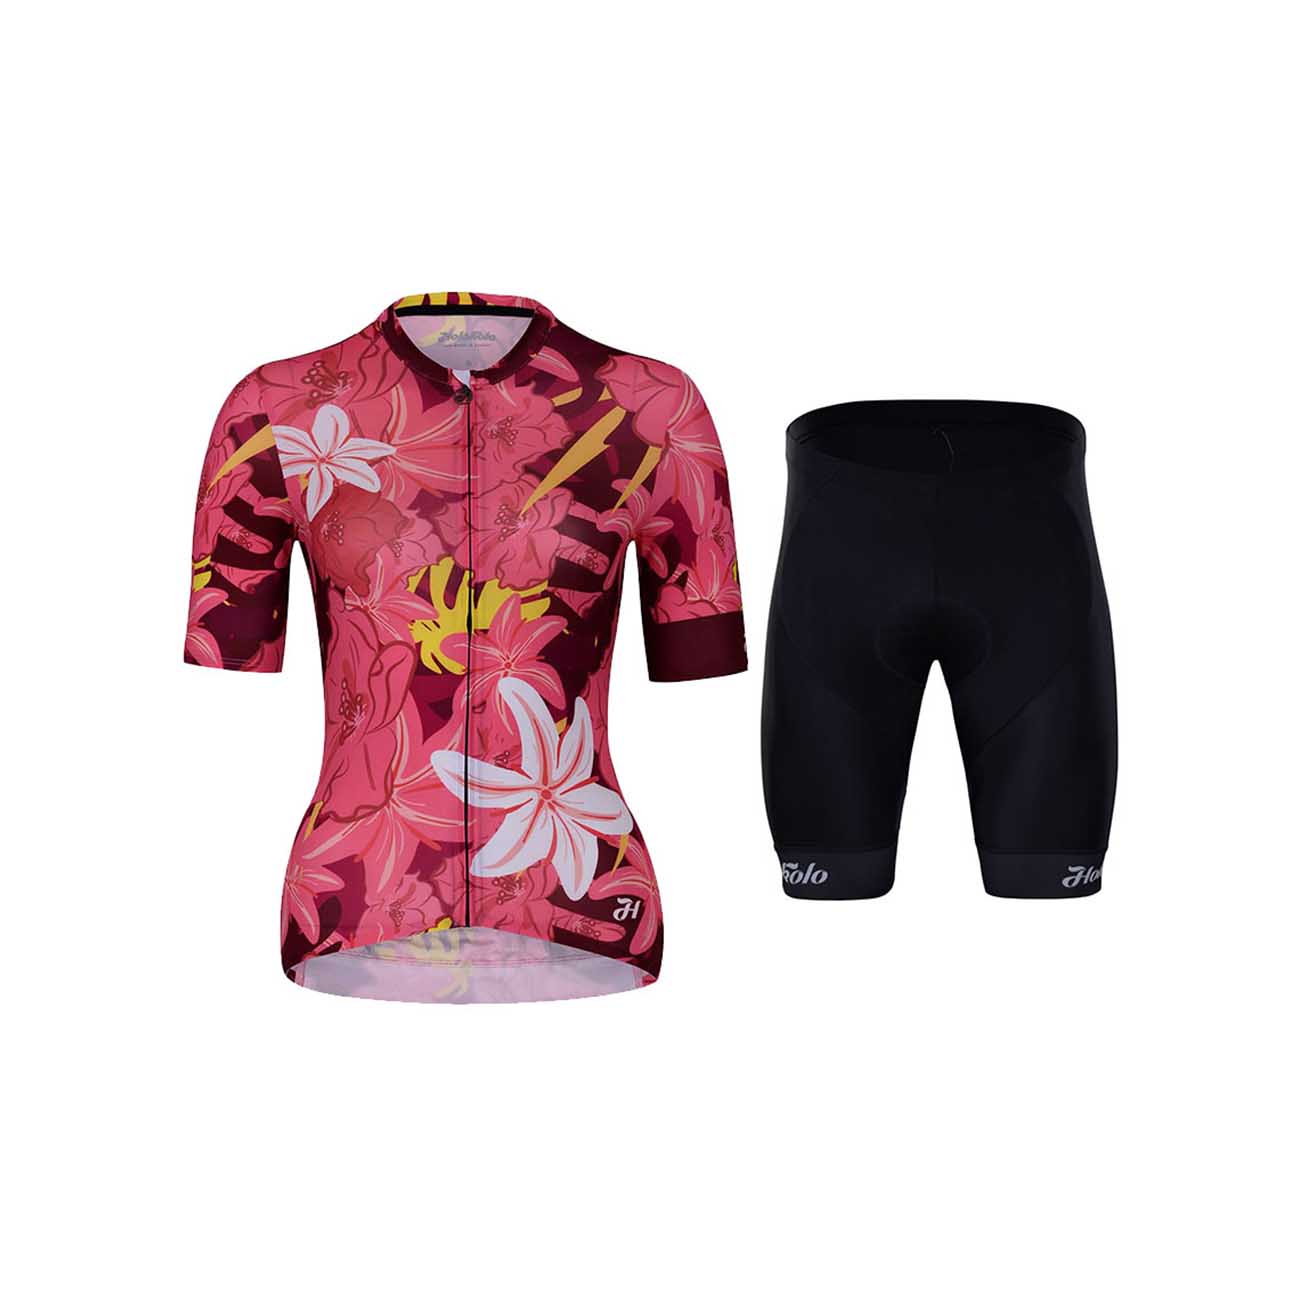 HOLOKOLO Cyklistický krátký dres a krátké kalhoty - PASSIONATE ELITE LAD - černá/červená